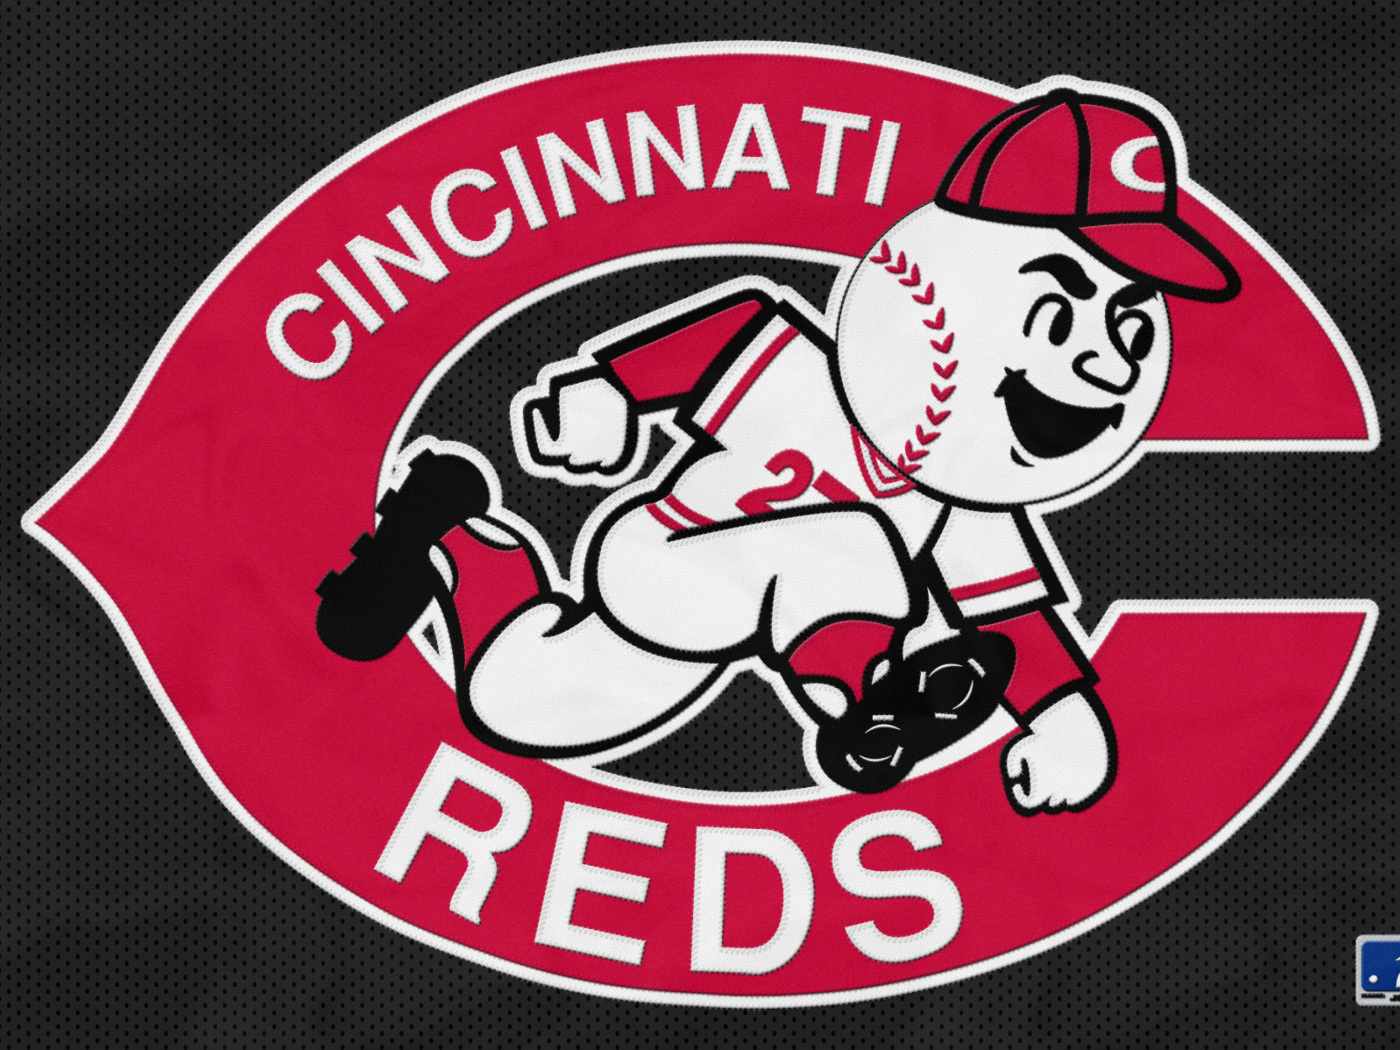 Cincinnati Reds from League Baseball wallpaper 1400x1050